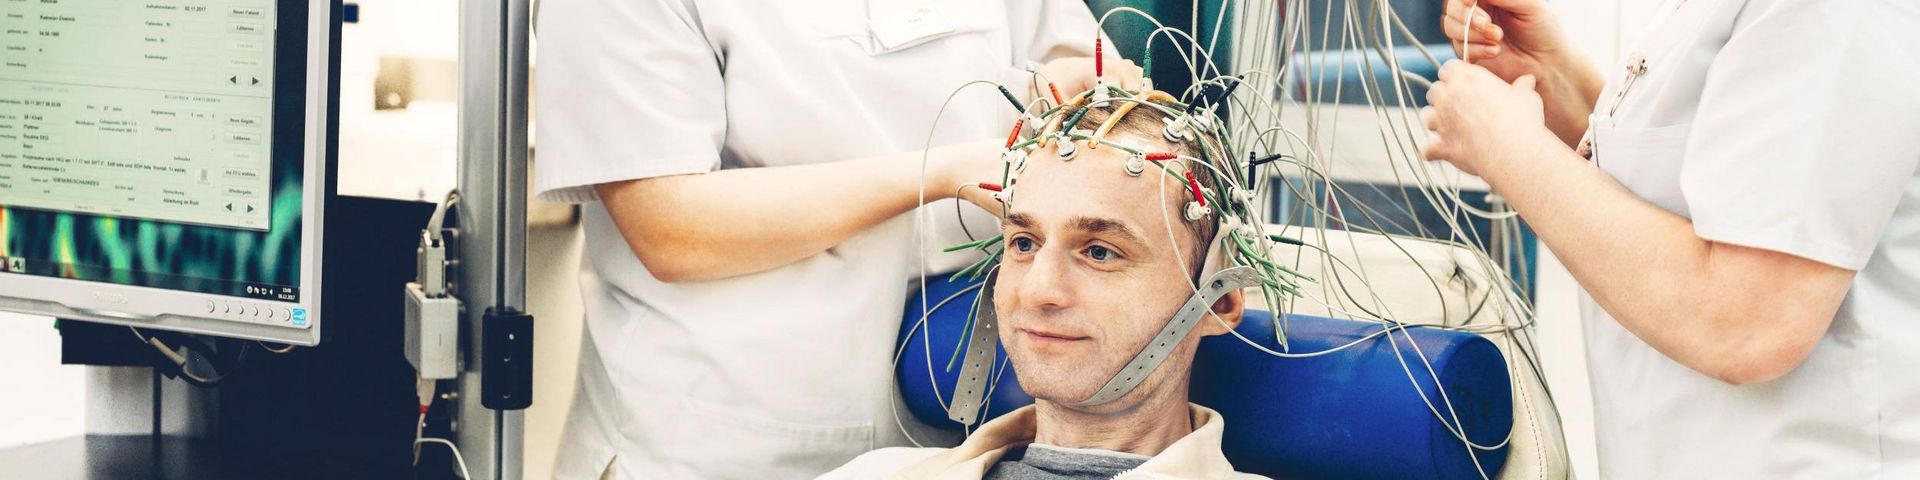 Neurologische-Behandlung-mit-EEG